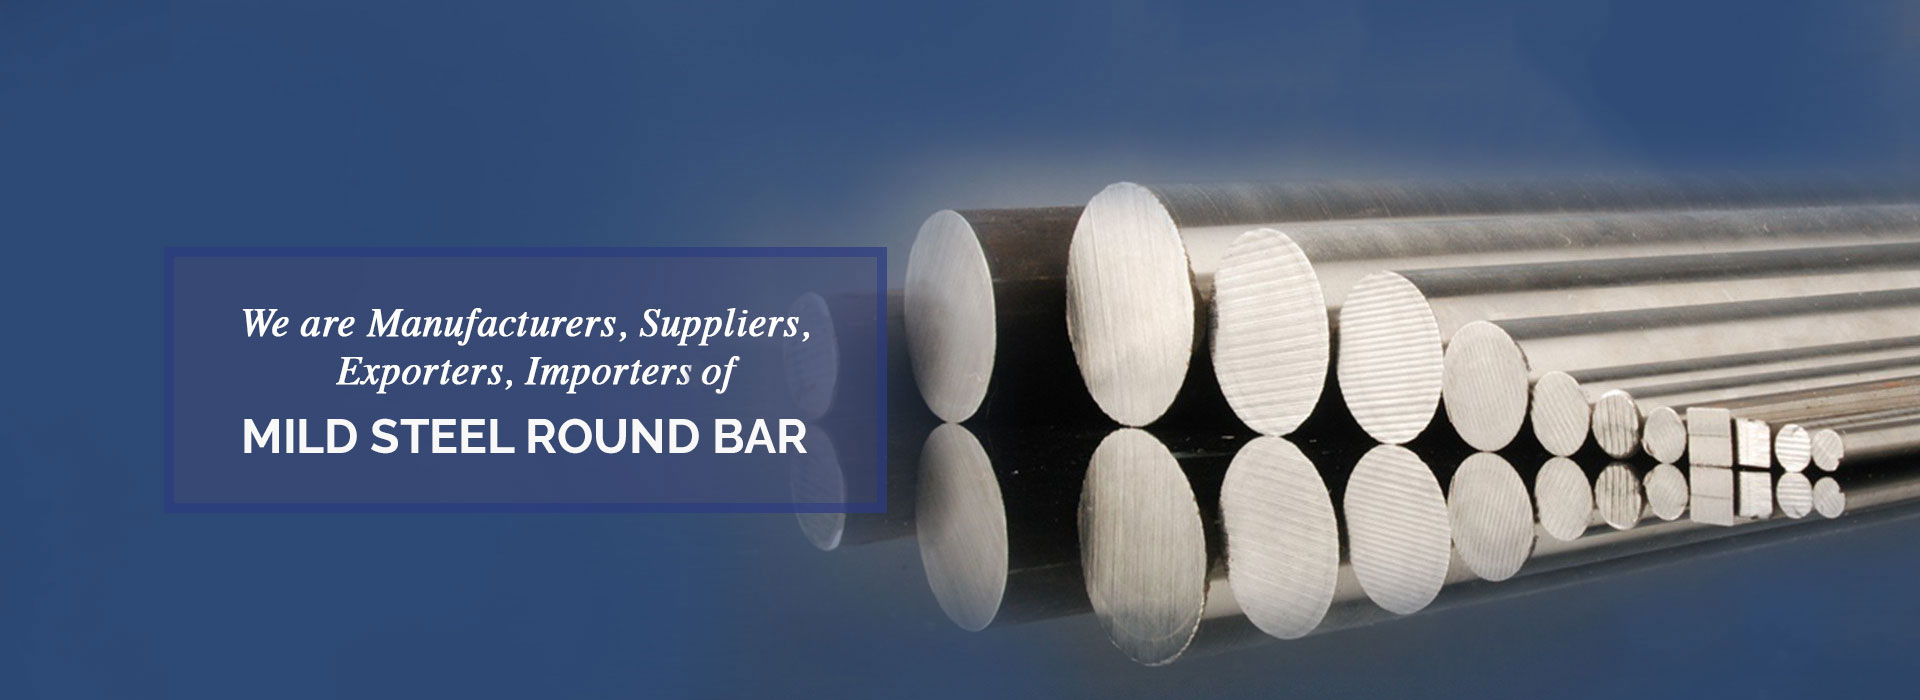 Mild Steel Round Bar Manufacturers in Philippines